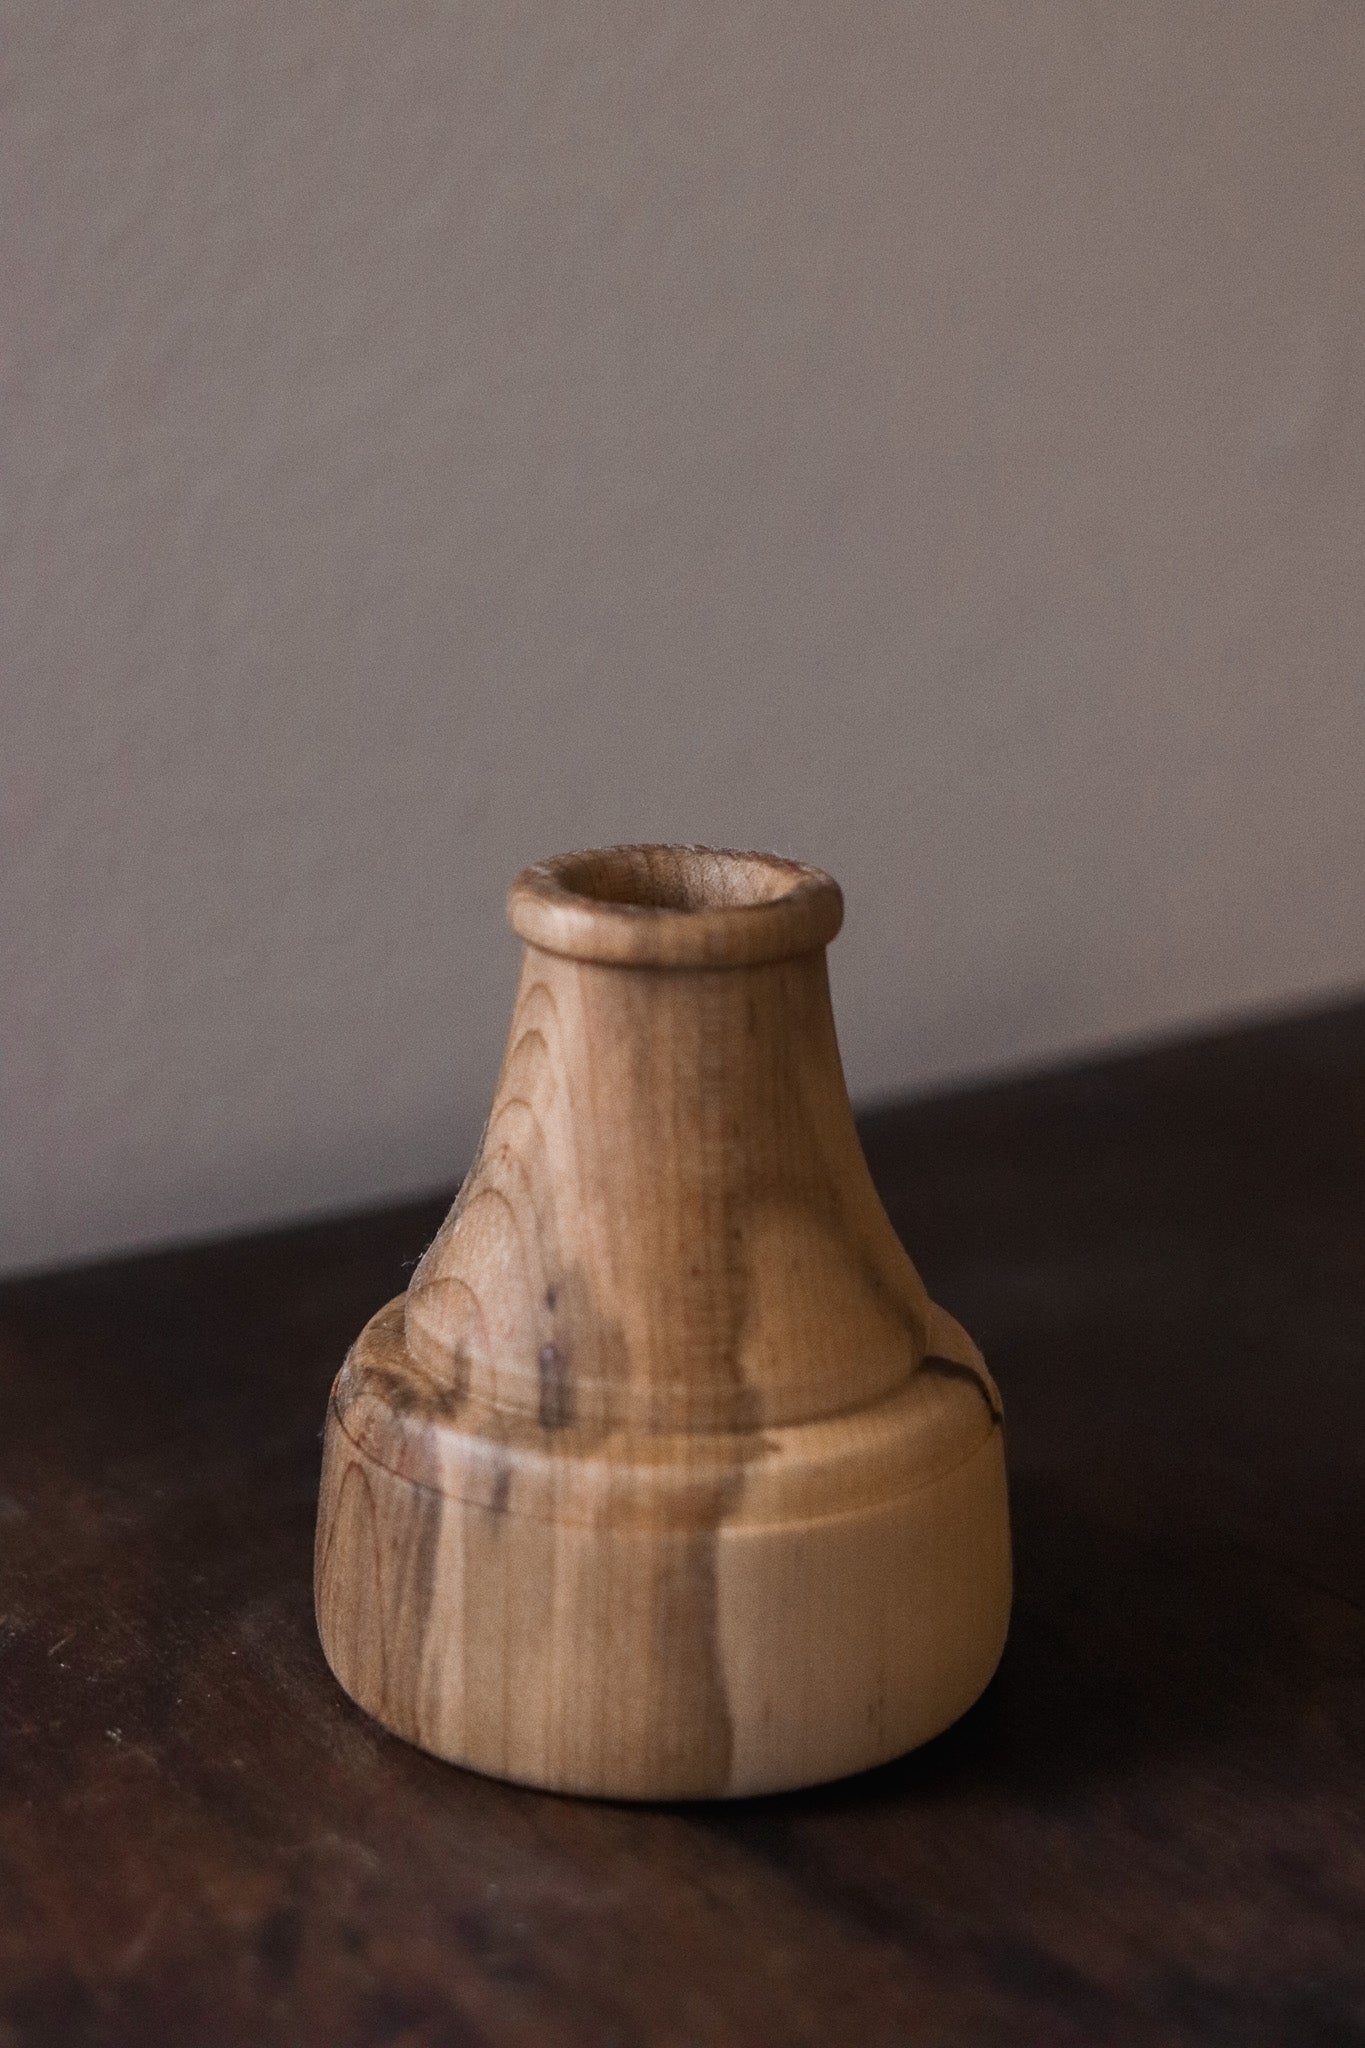 Hand-turned Miniature Vases - Batch 1 - Vase 05